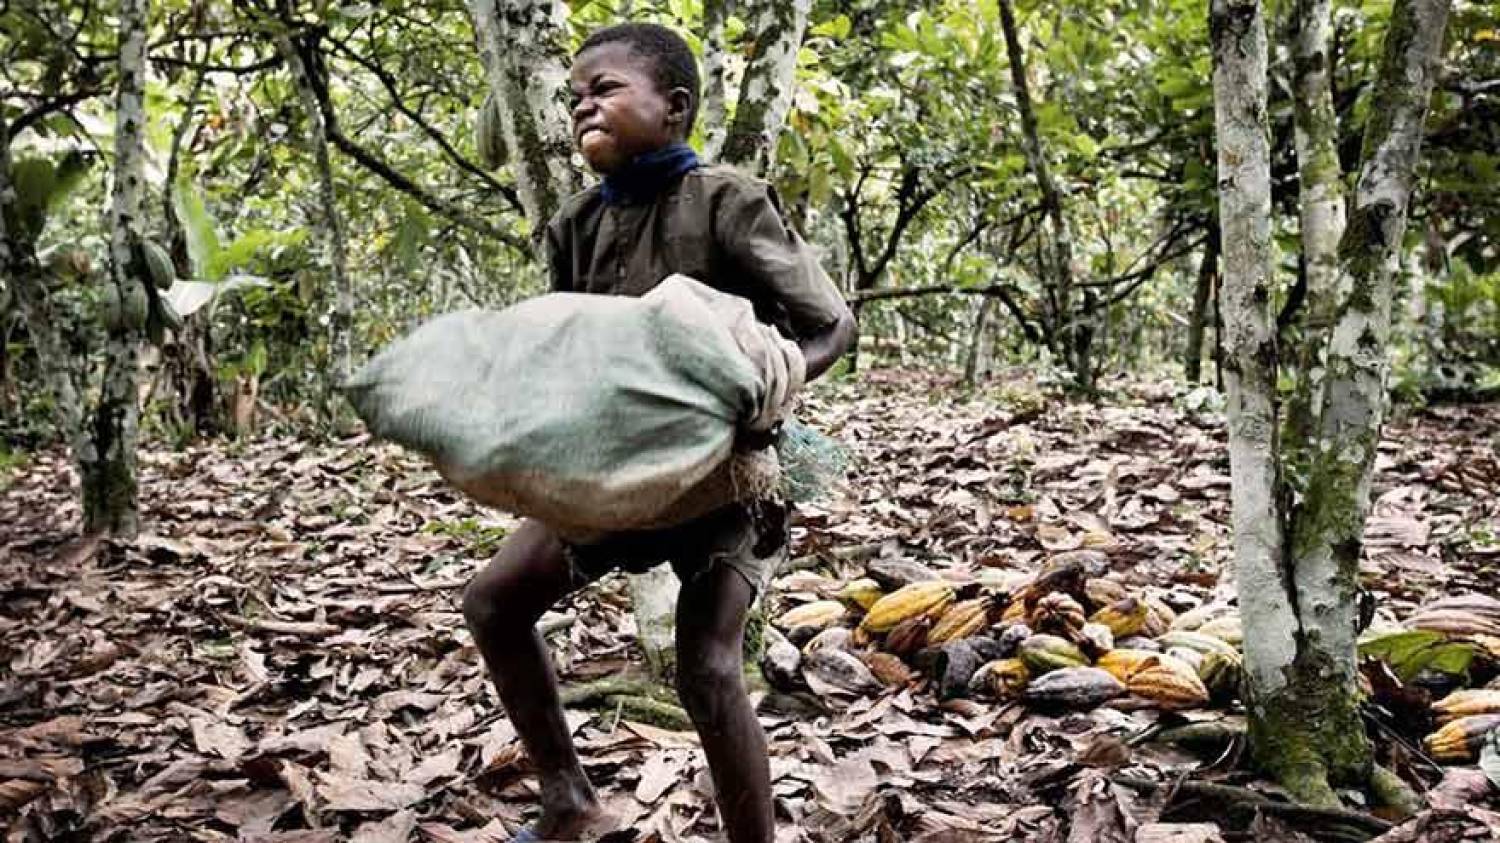 O lado negro do chocolate: crianças escravizadas nas plantações de cacau